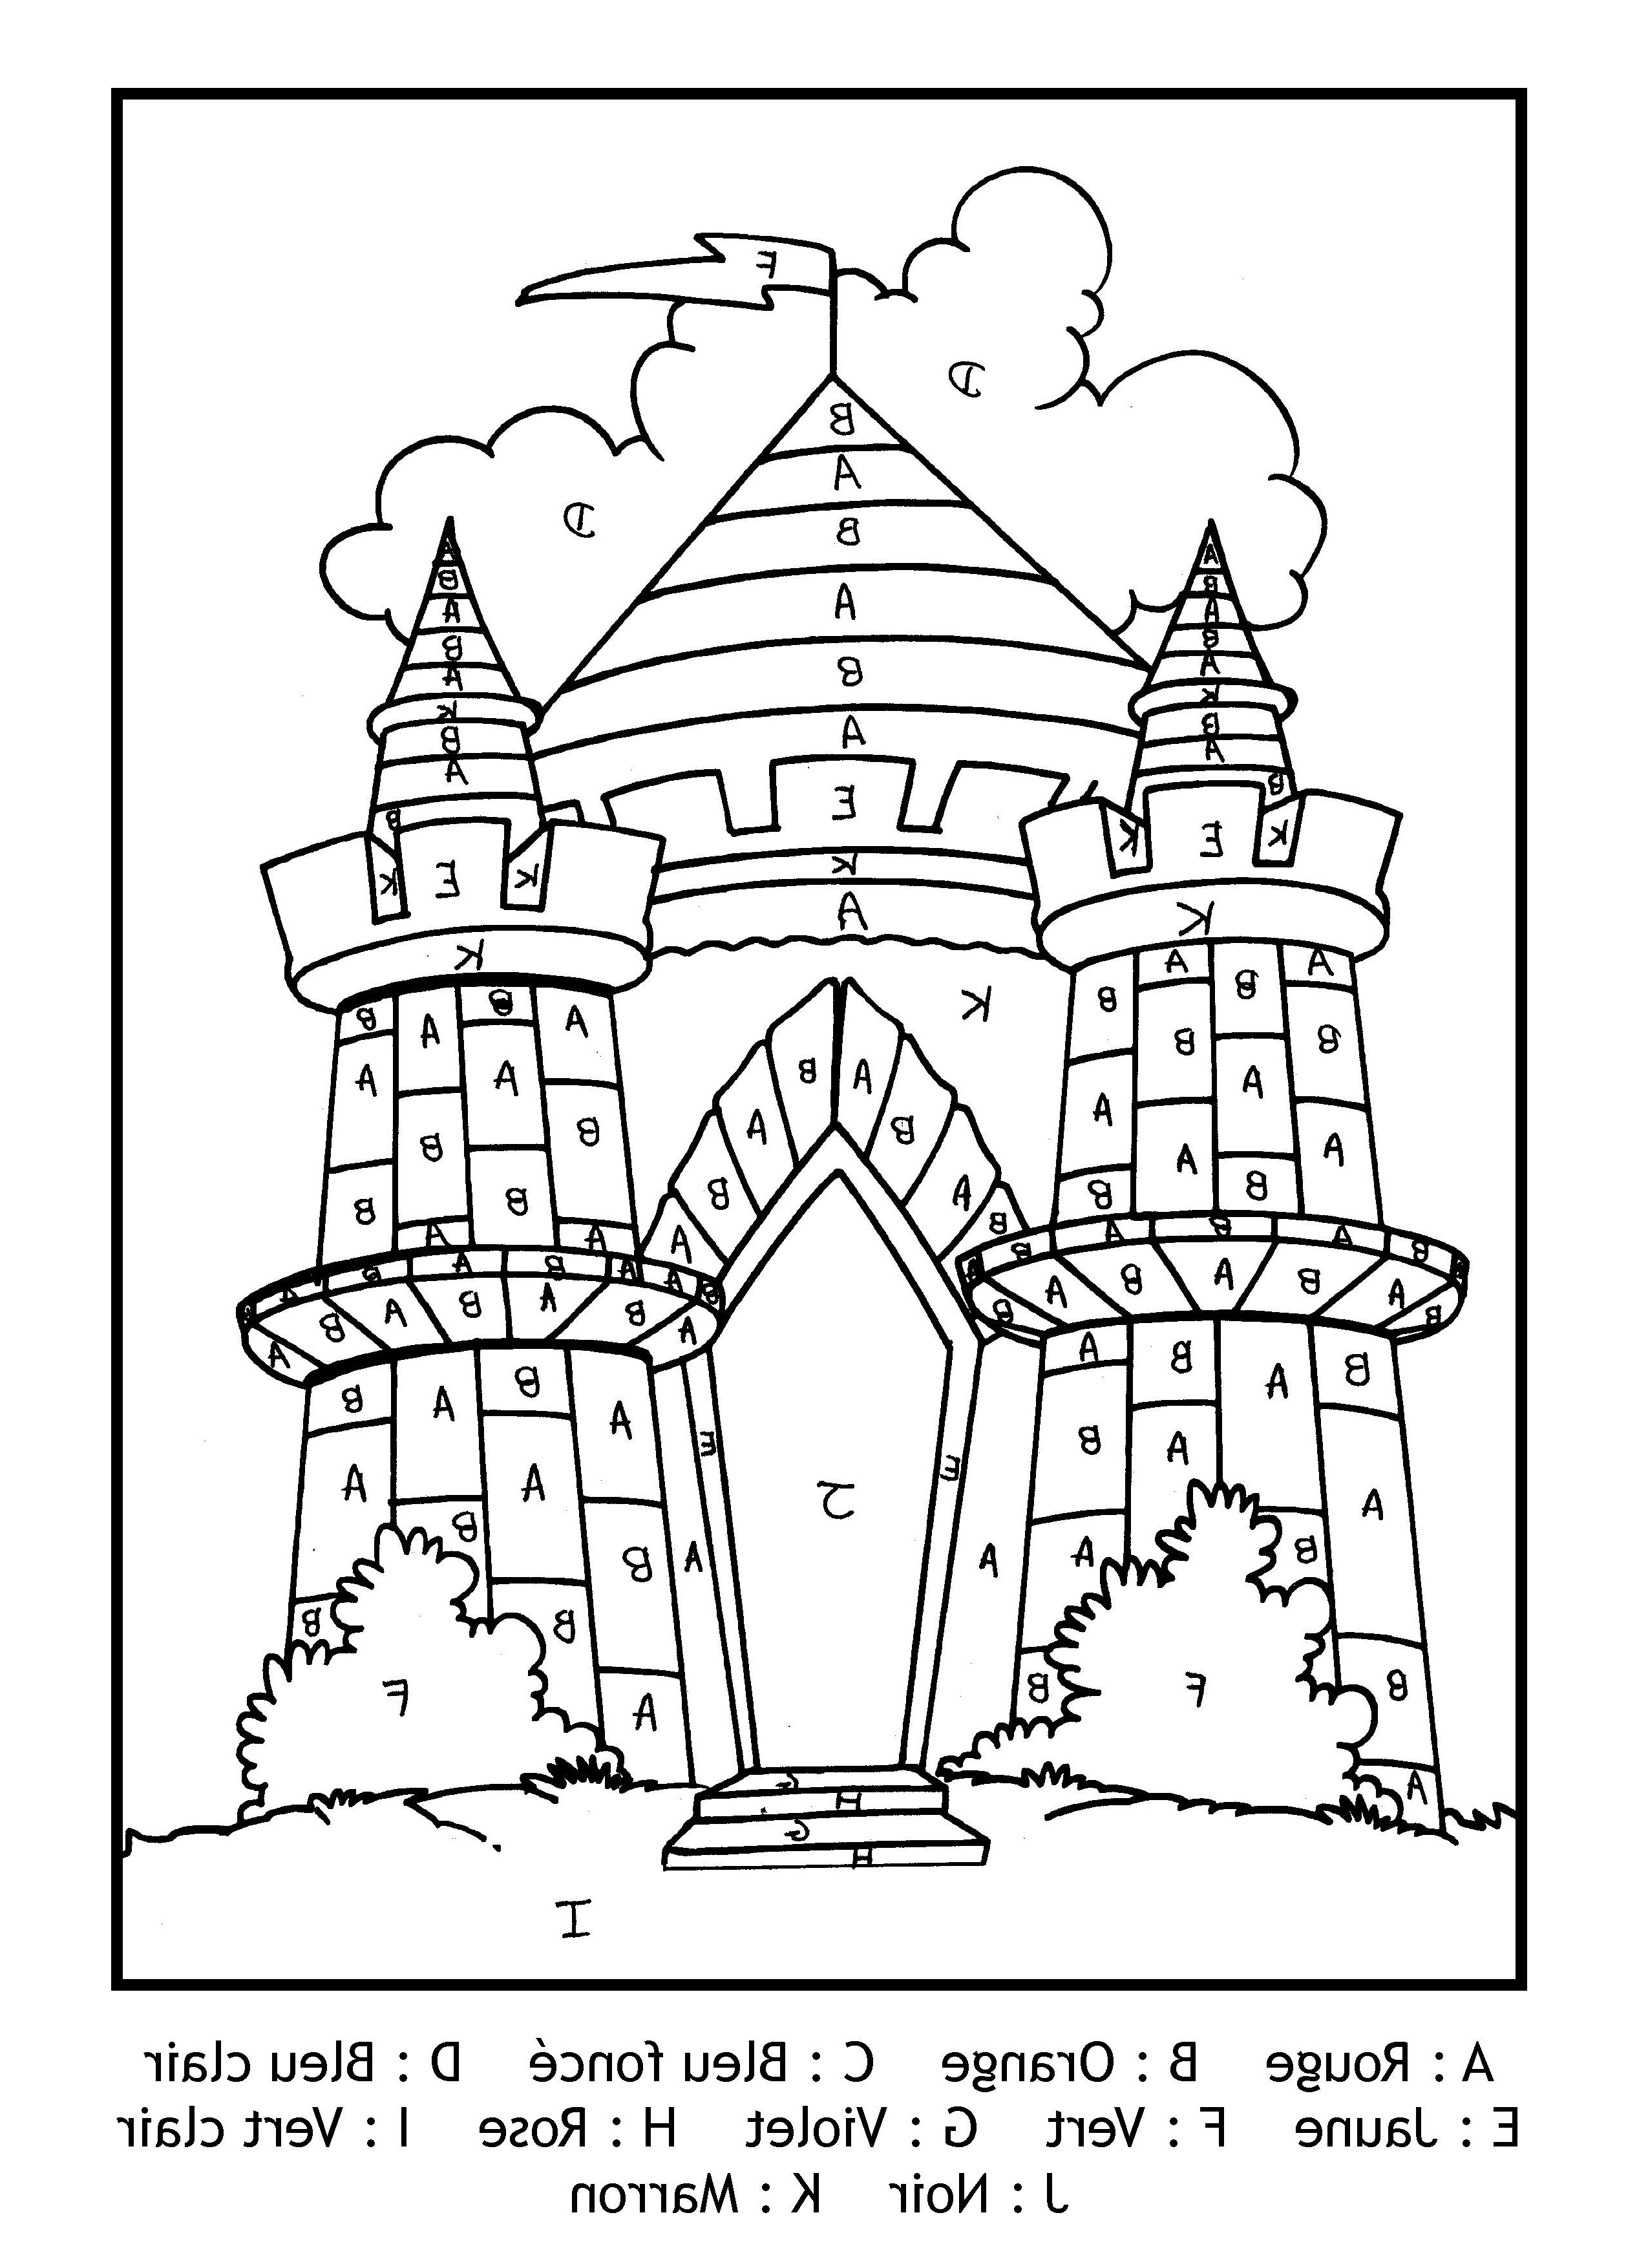 Chateau Moyen Age Dessin Beau Image Pour Imprimer Ce Coloriage Gratuit Coloriage Magique